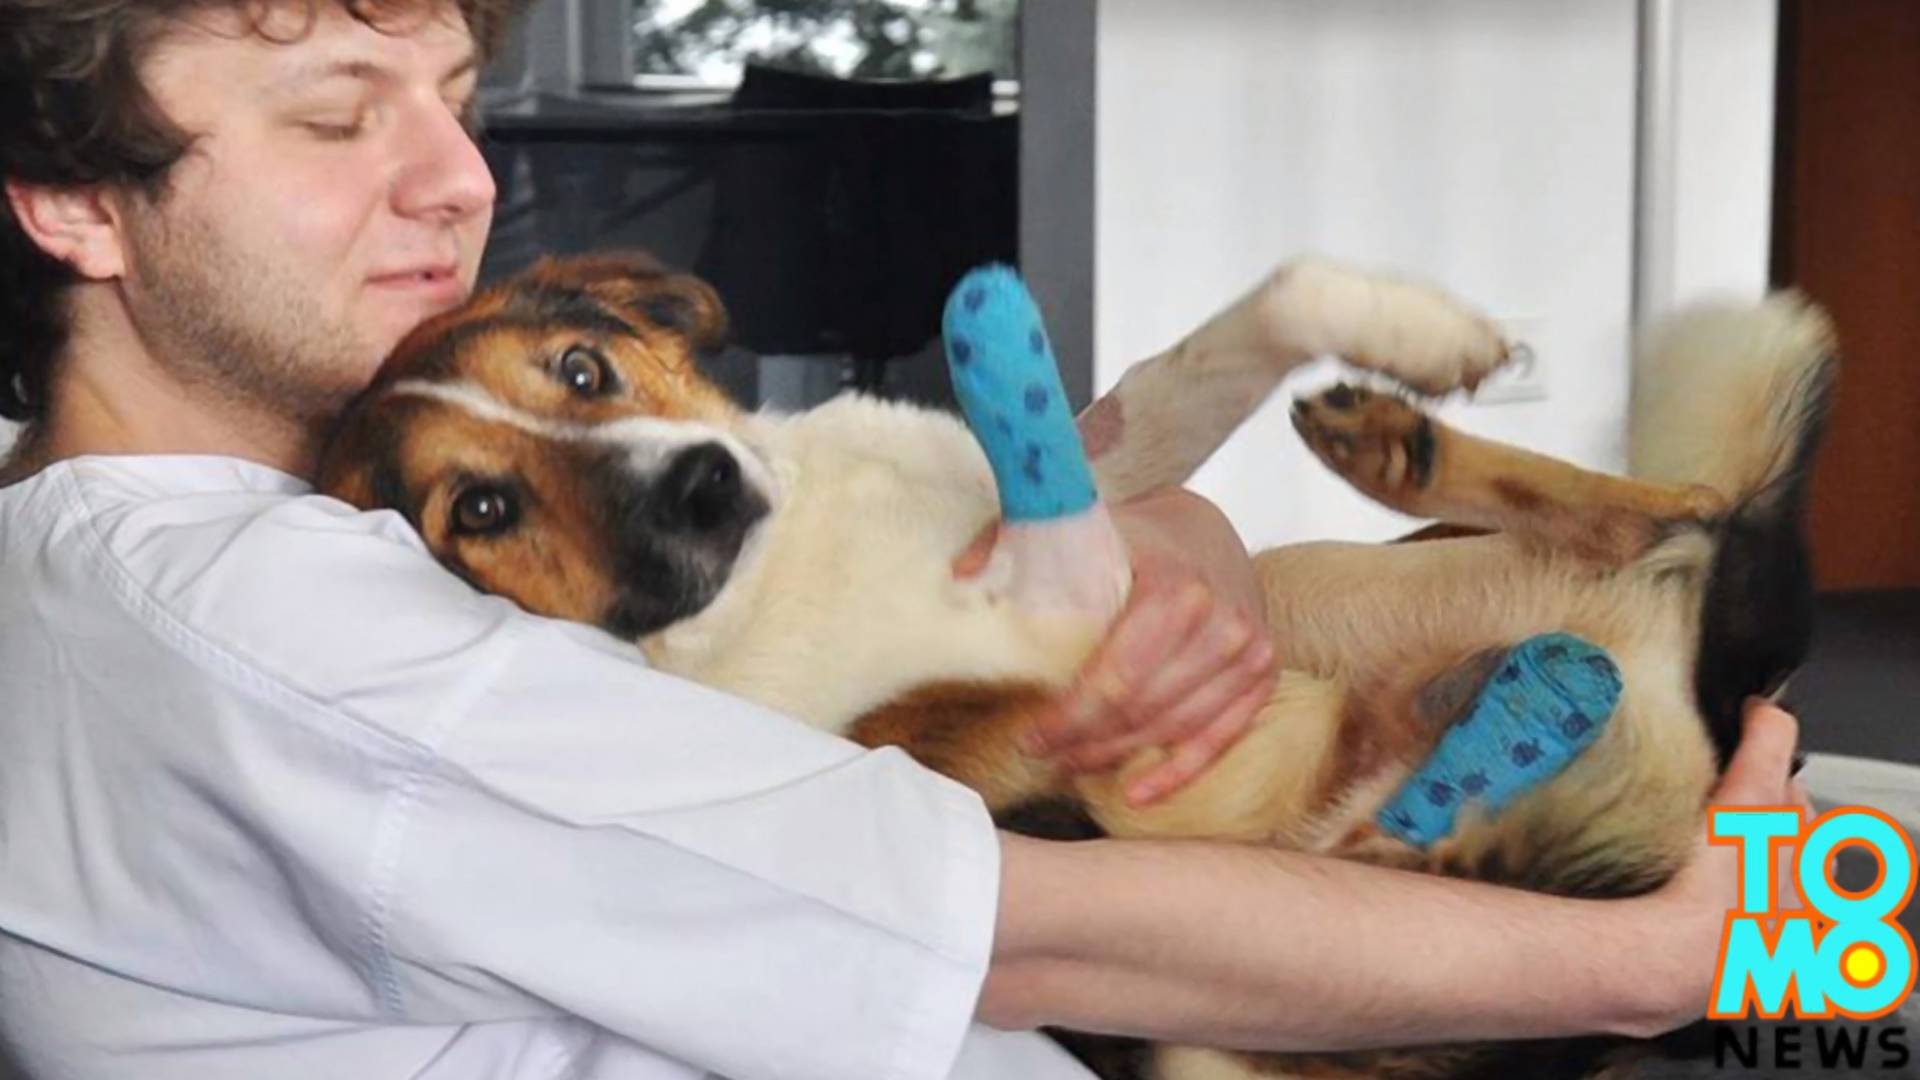 Cudem uratowany pies zyskał drugie życie. O Foreście z Przemyśla mówią nawet amerykańskie media